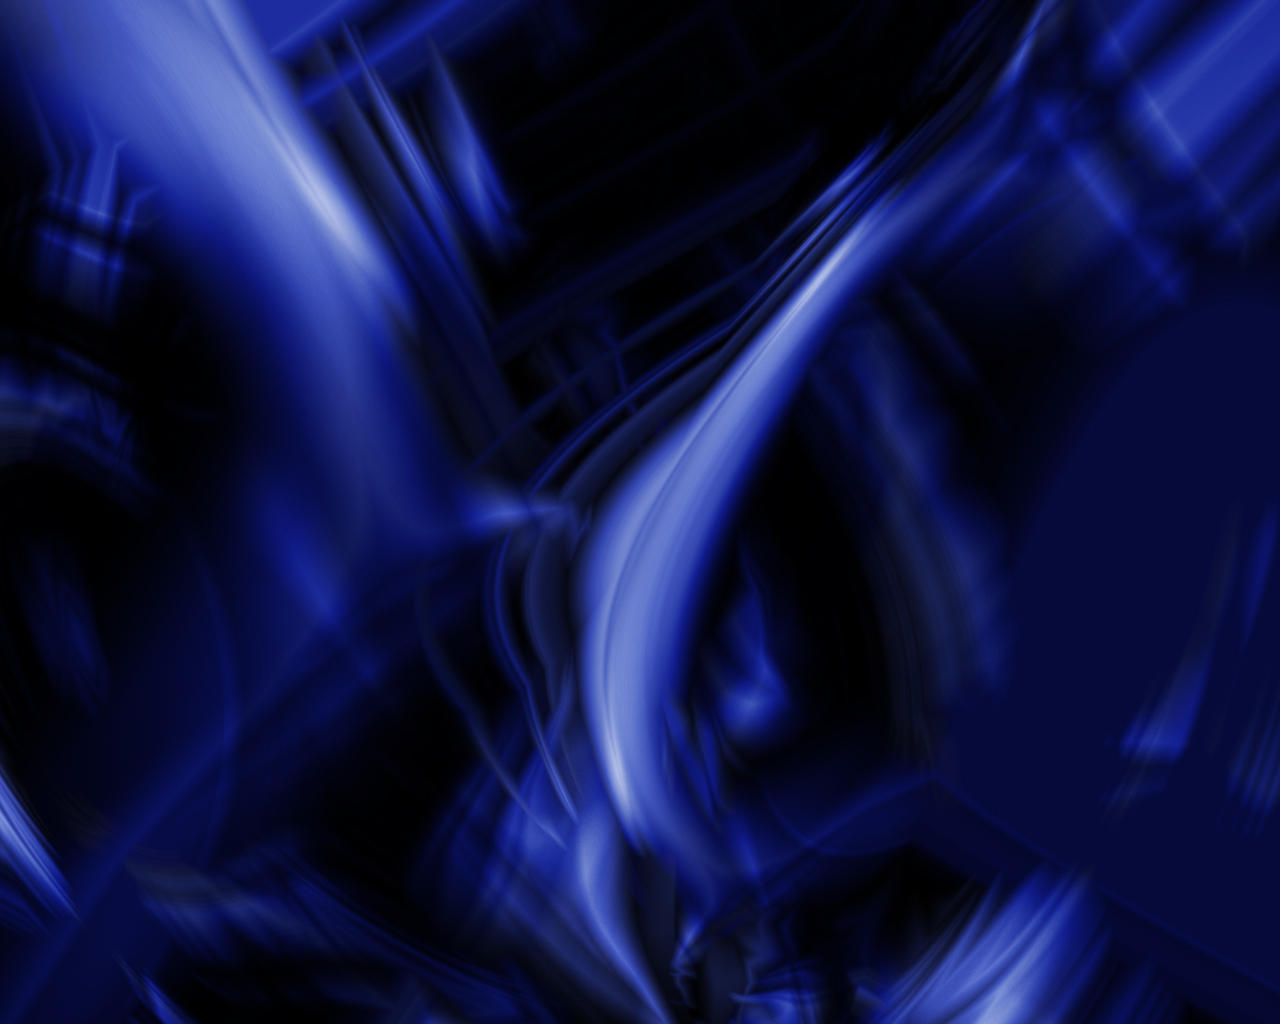 Dark blue by ninj4hax0r